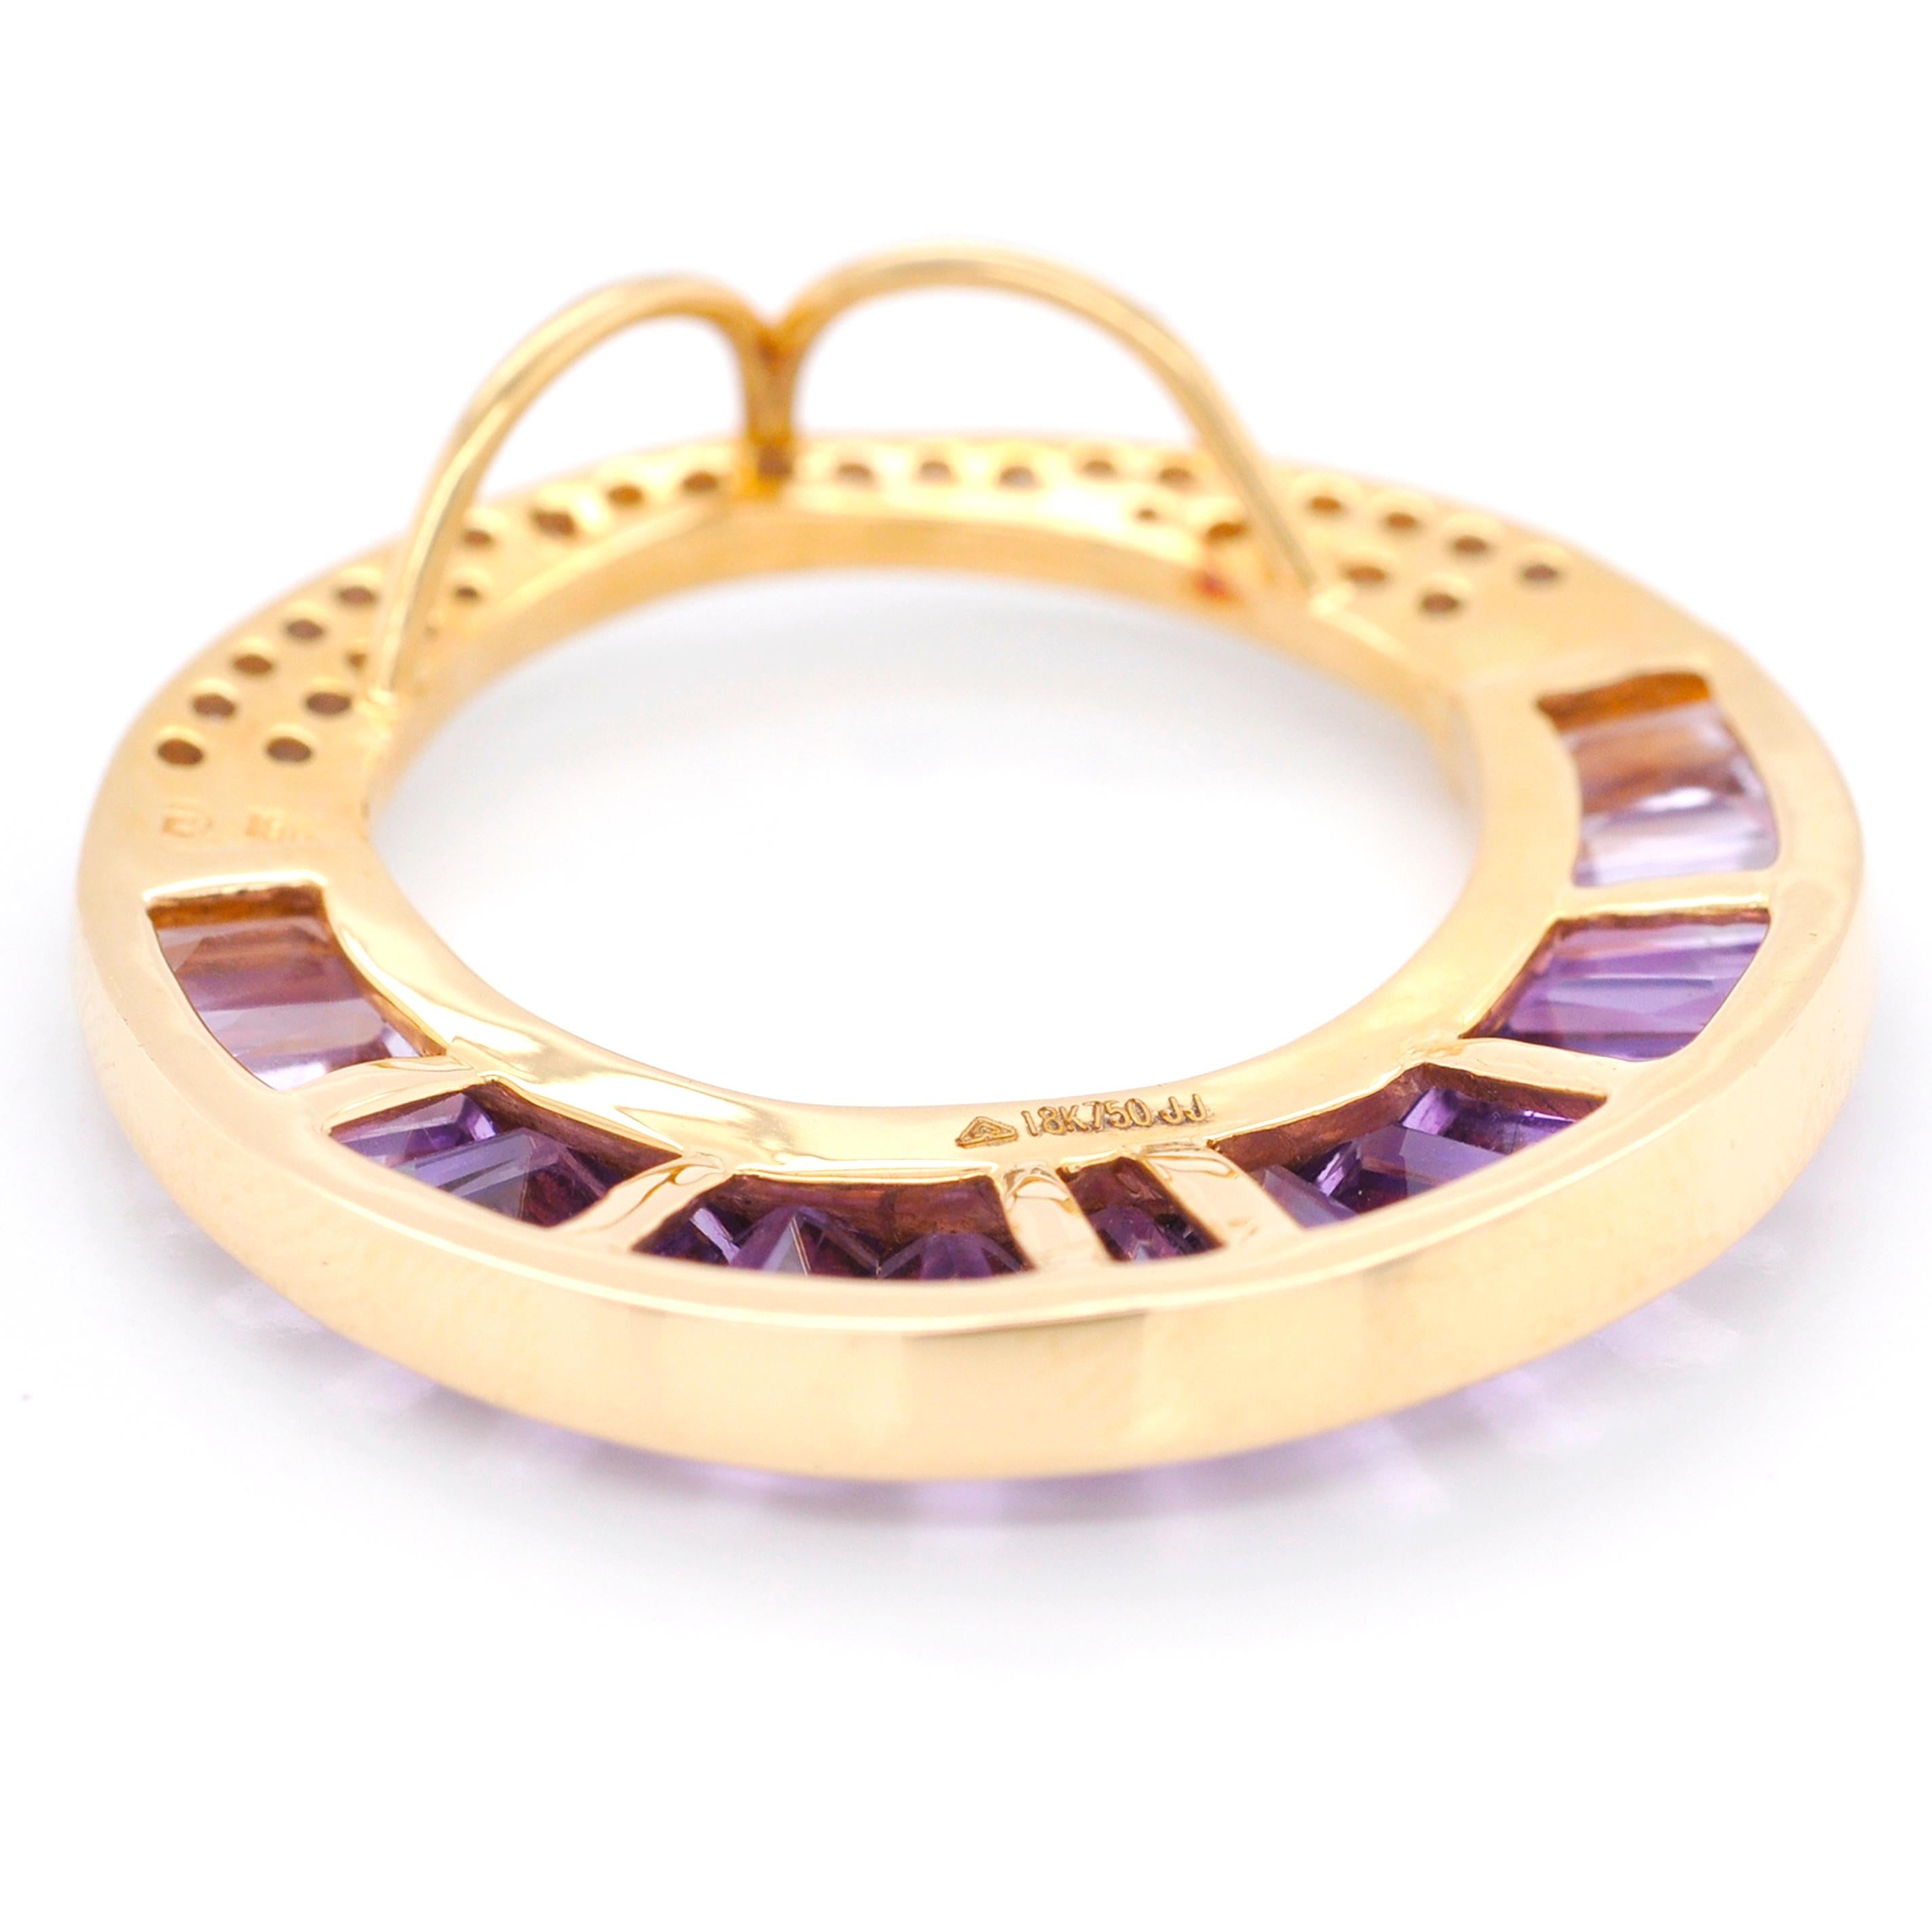 18 Karat Gold Calibre Cut Amethyst Baguette Diamond Pendant Necklace Brooch For Sale 2